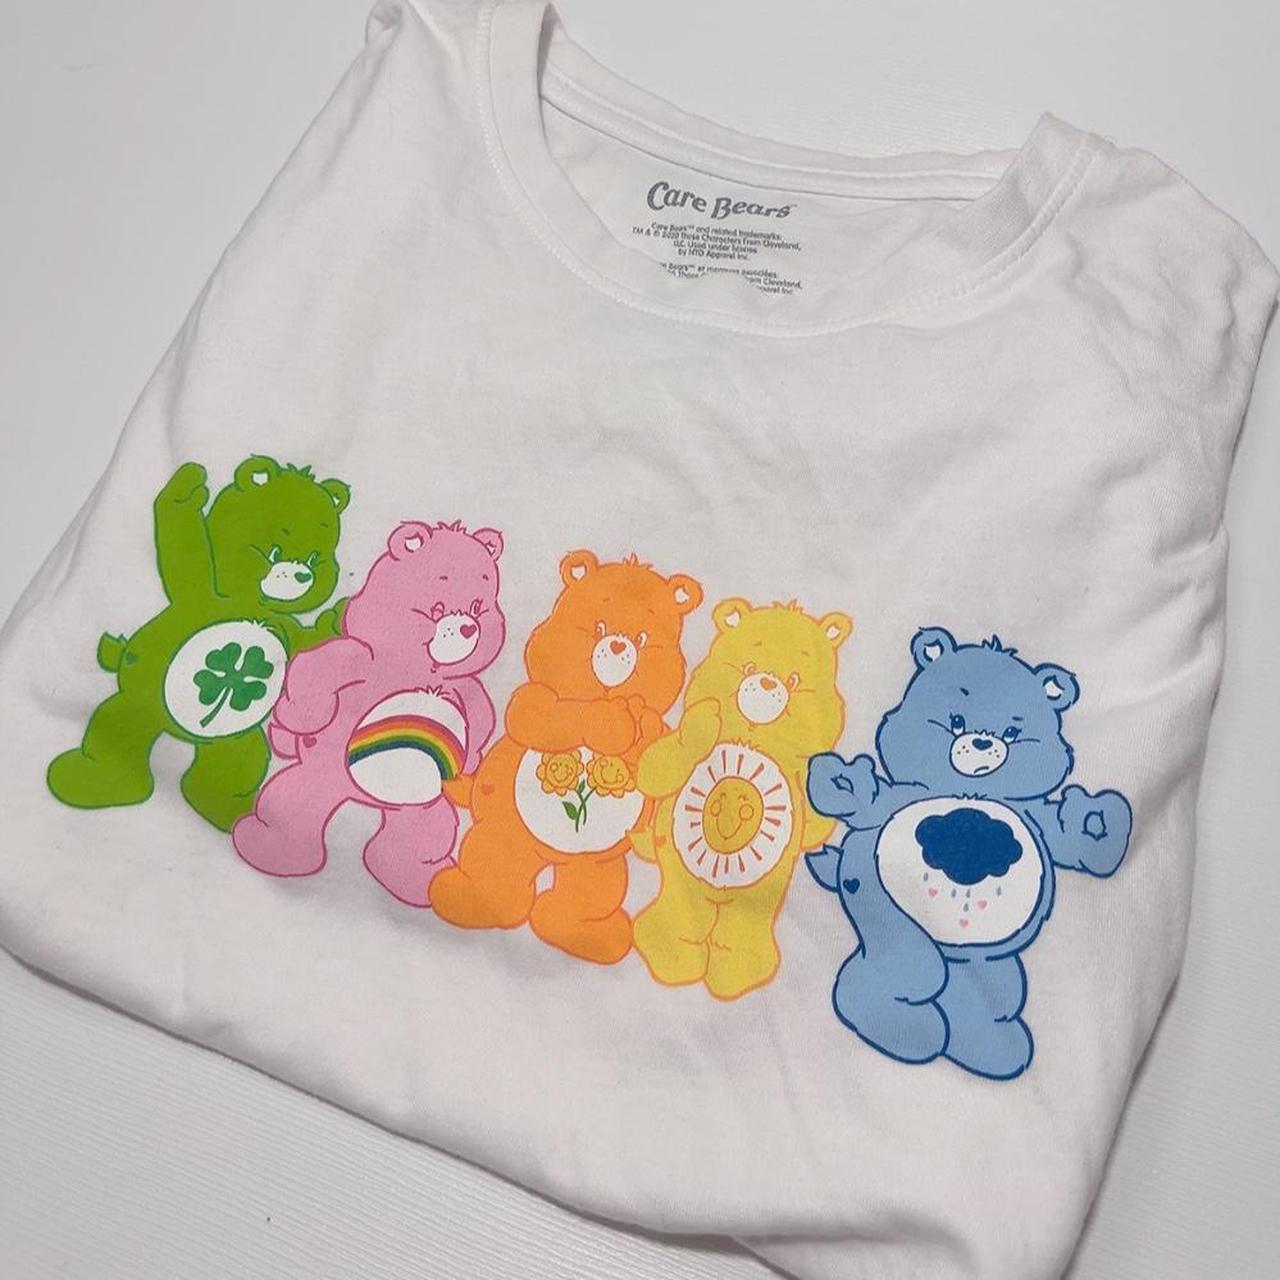 White Such Cute Rainbow Care Bear Crop Top T-Shirt